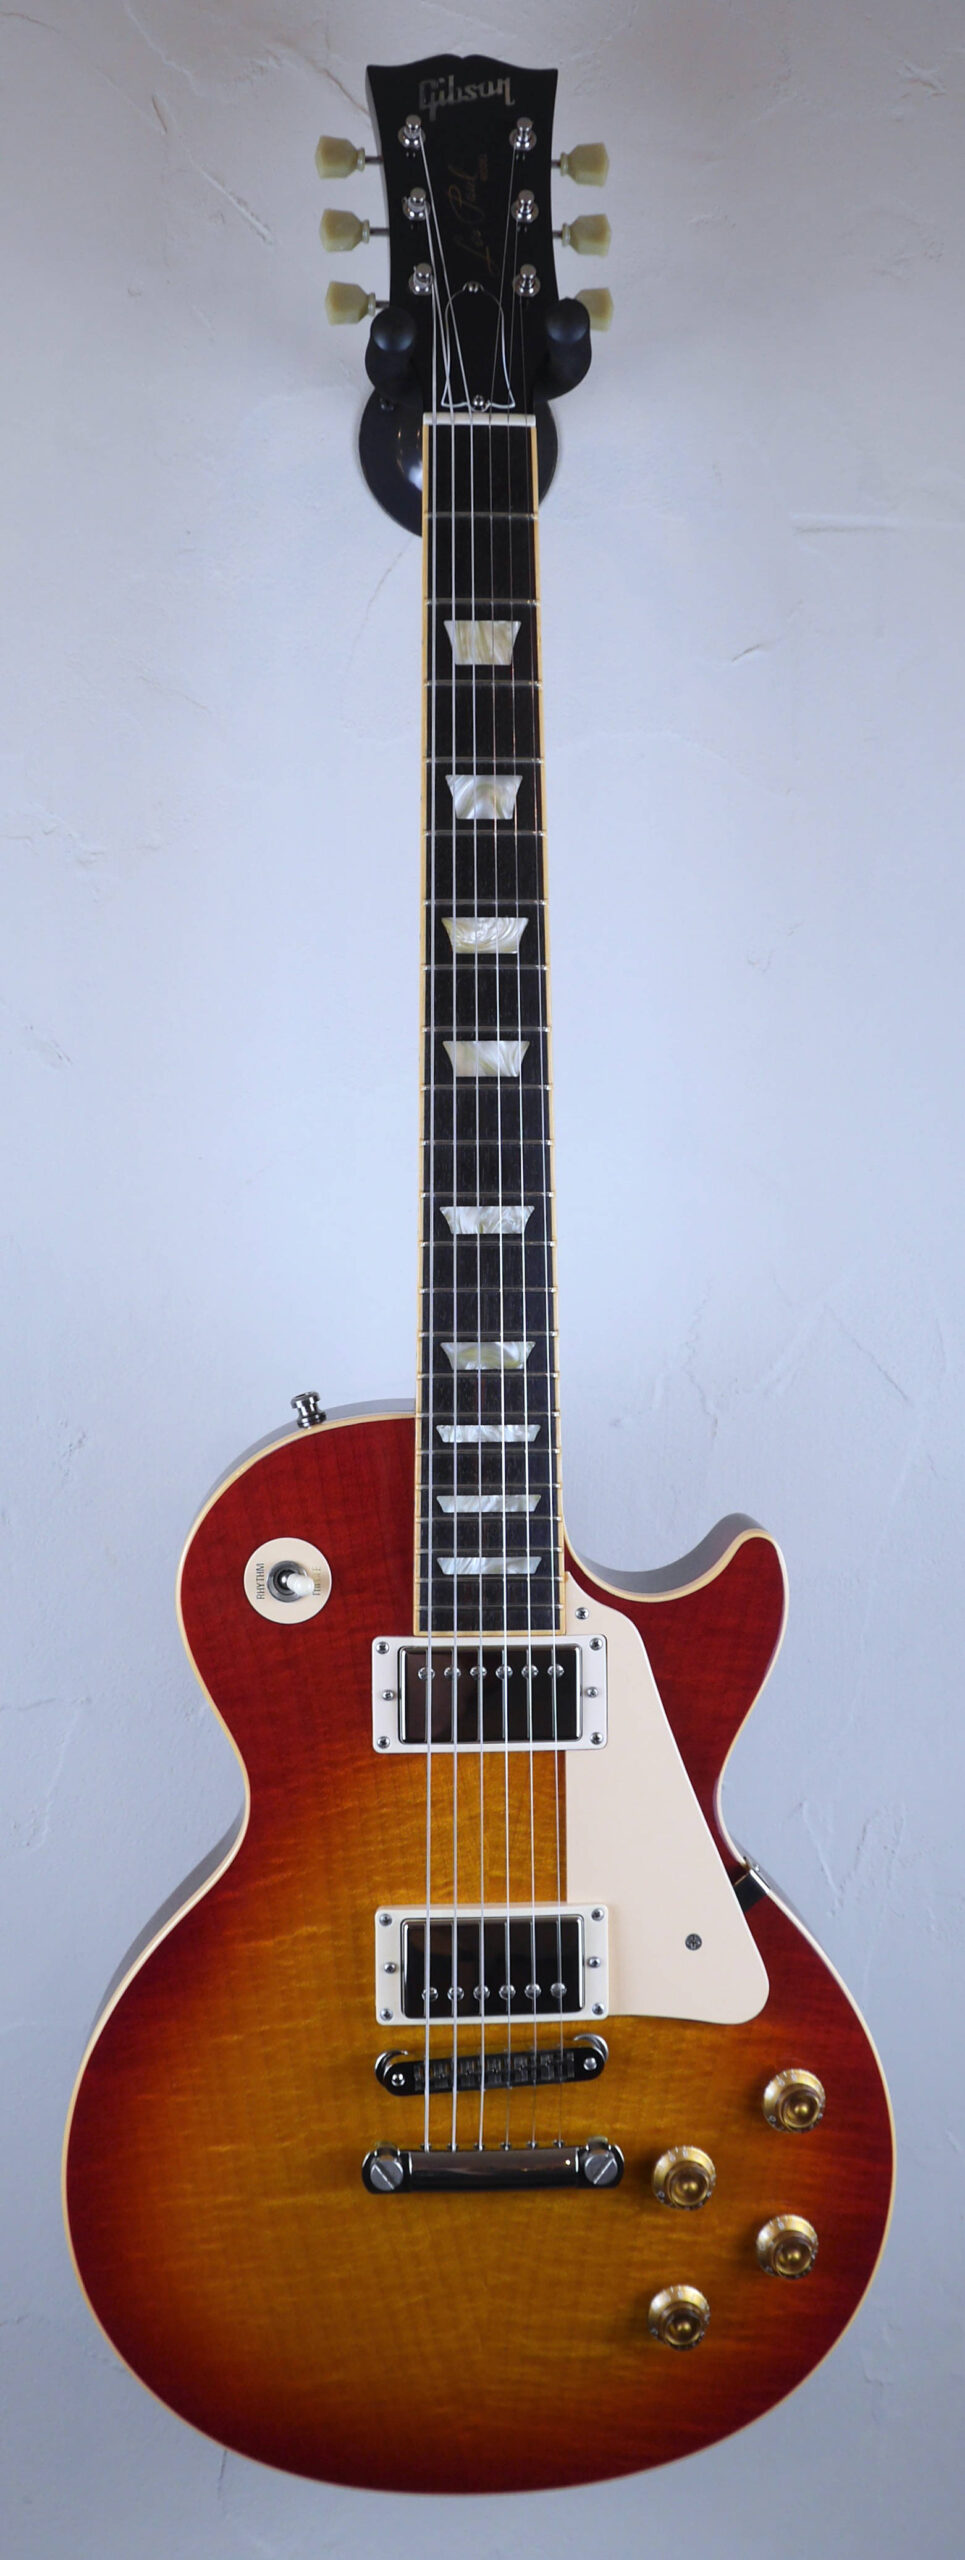 Gibson Les Paul Standard Premium Plus 29/08/2006 Heritage Cherry Sunburst 2